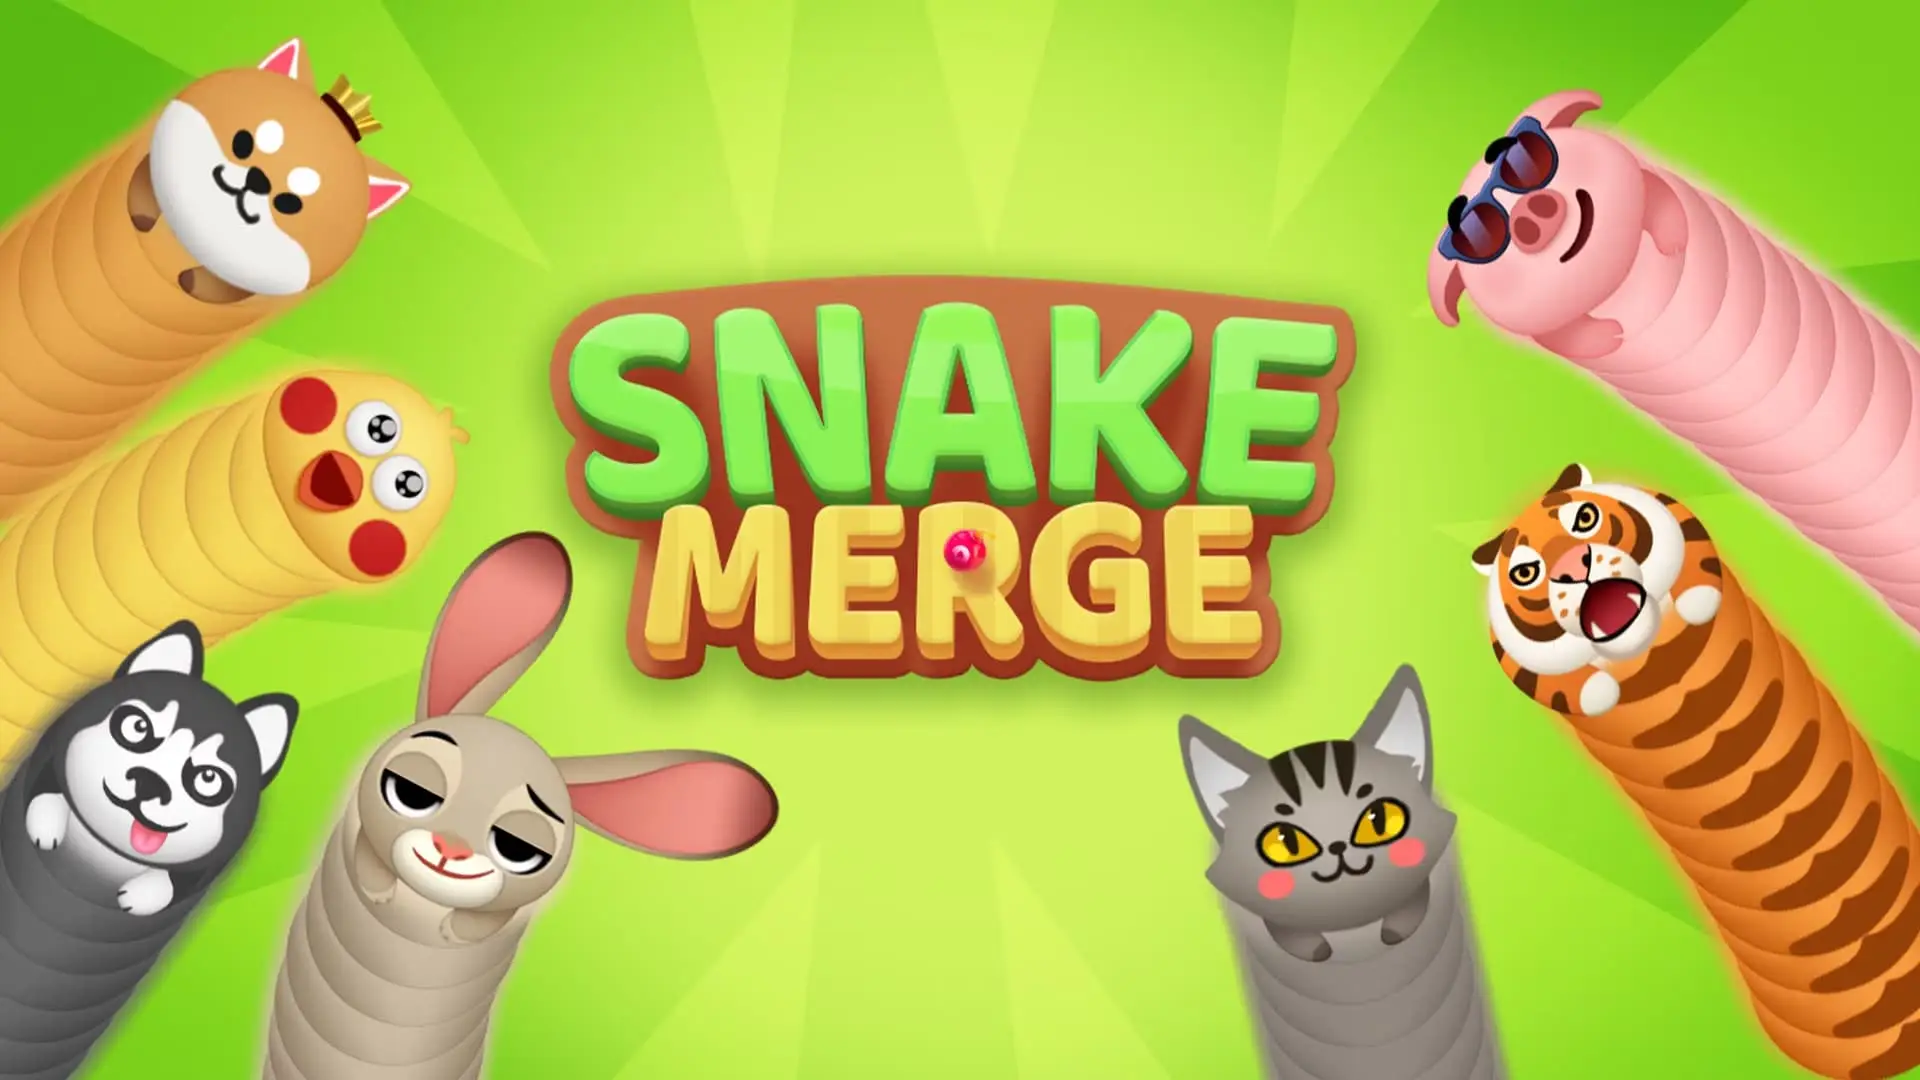 Giới thiệu về game hành động Snake Merge